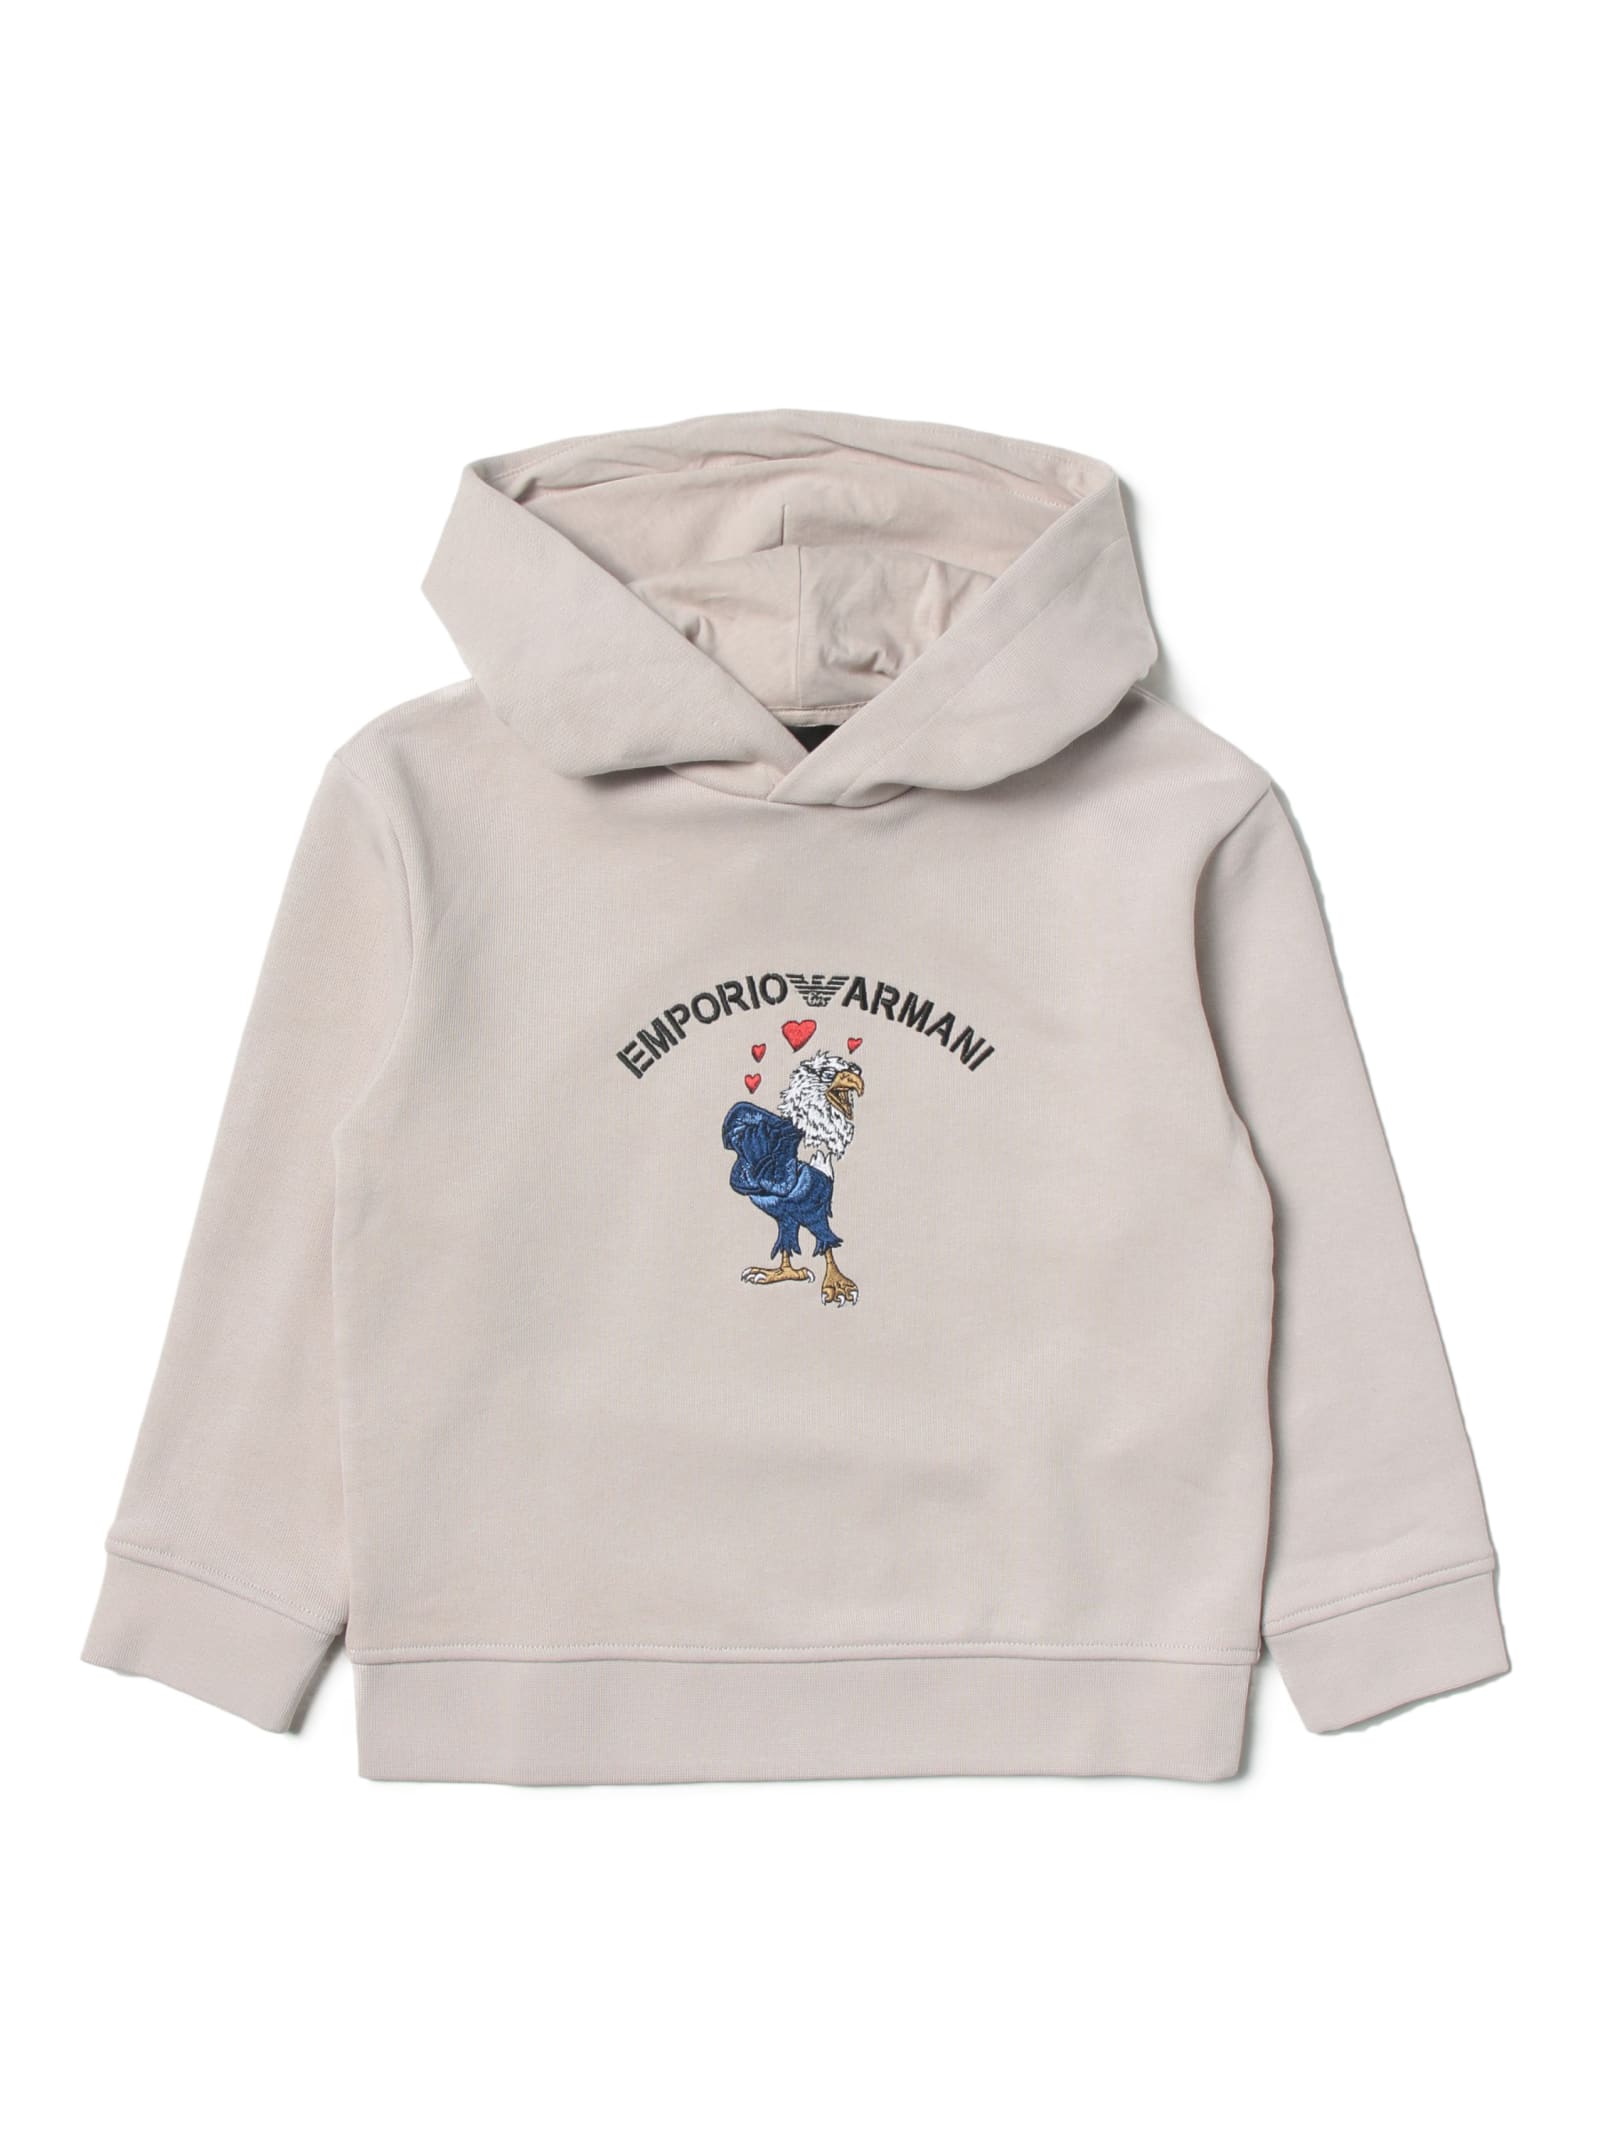 Emporio Armani Hooded Sweatshirt In Cotton